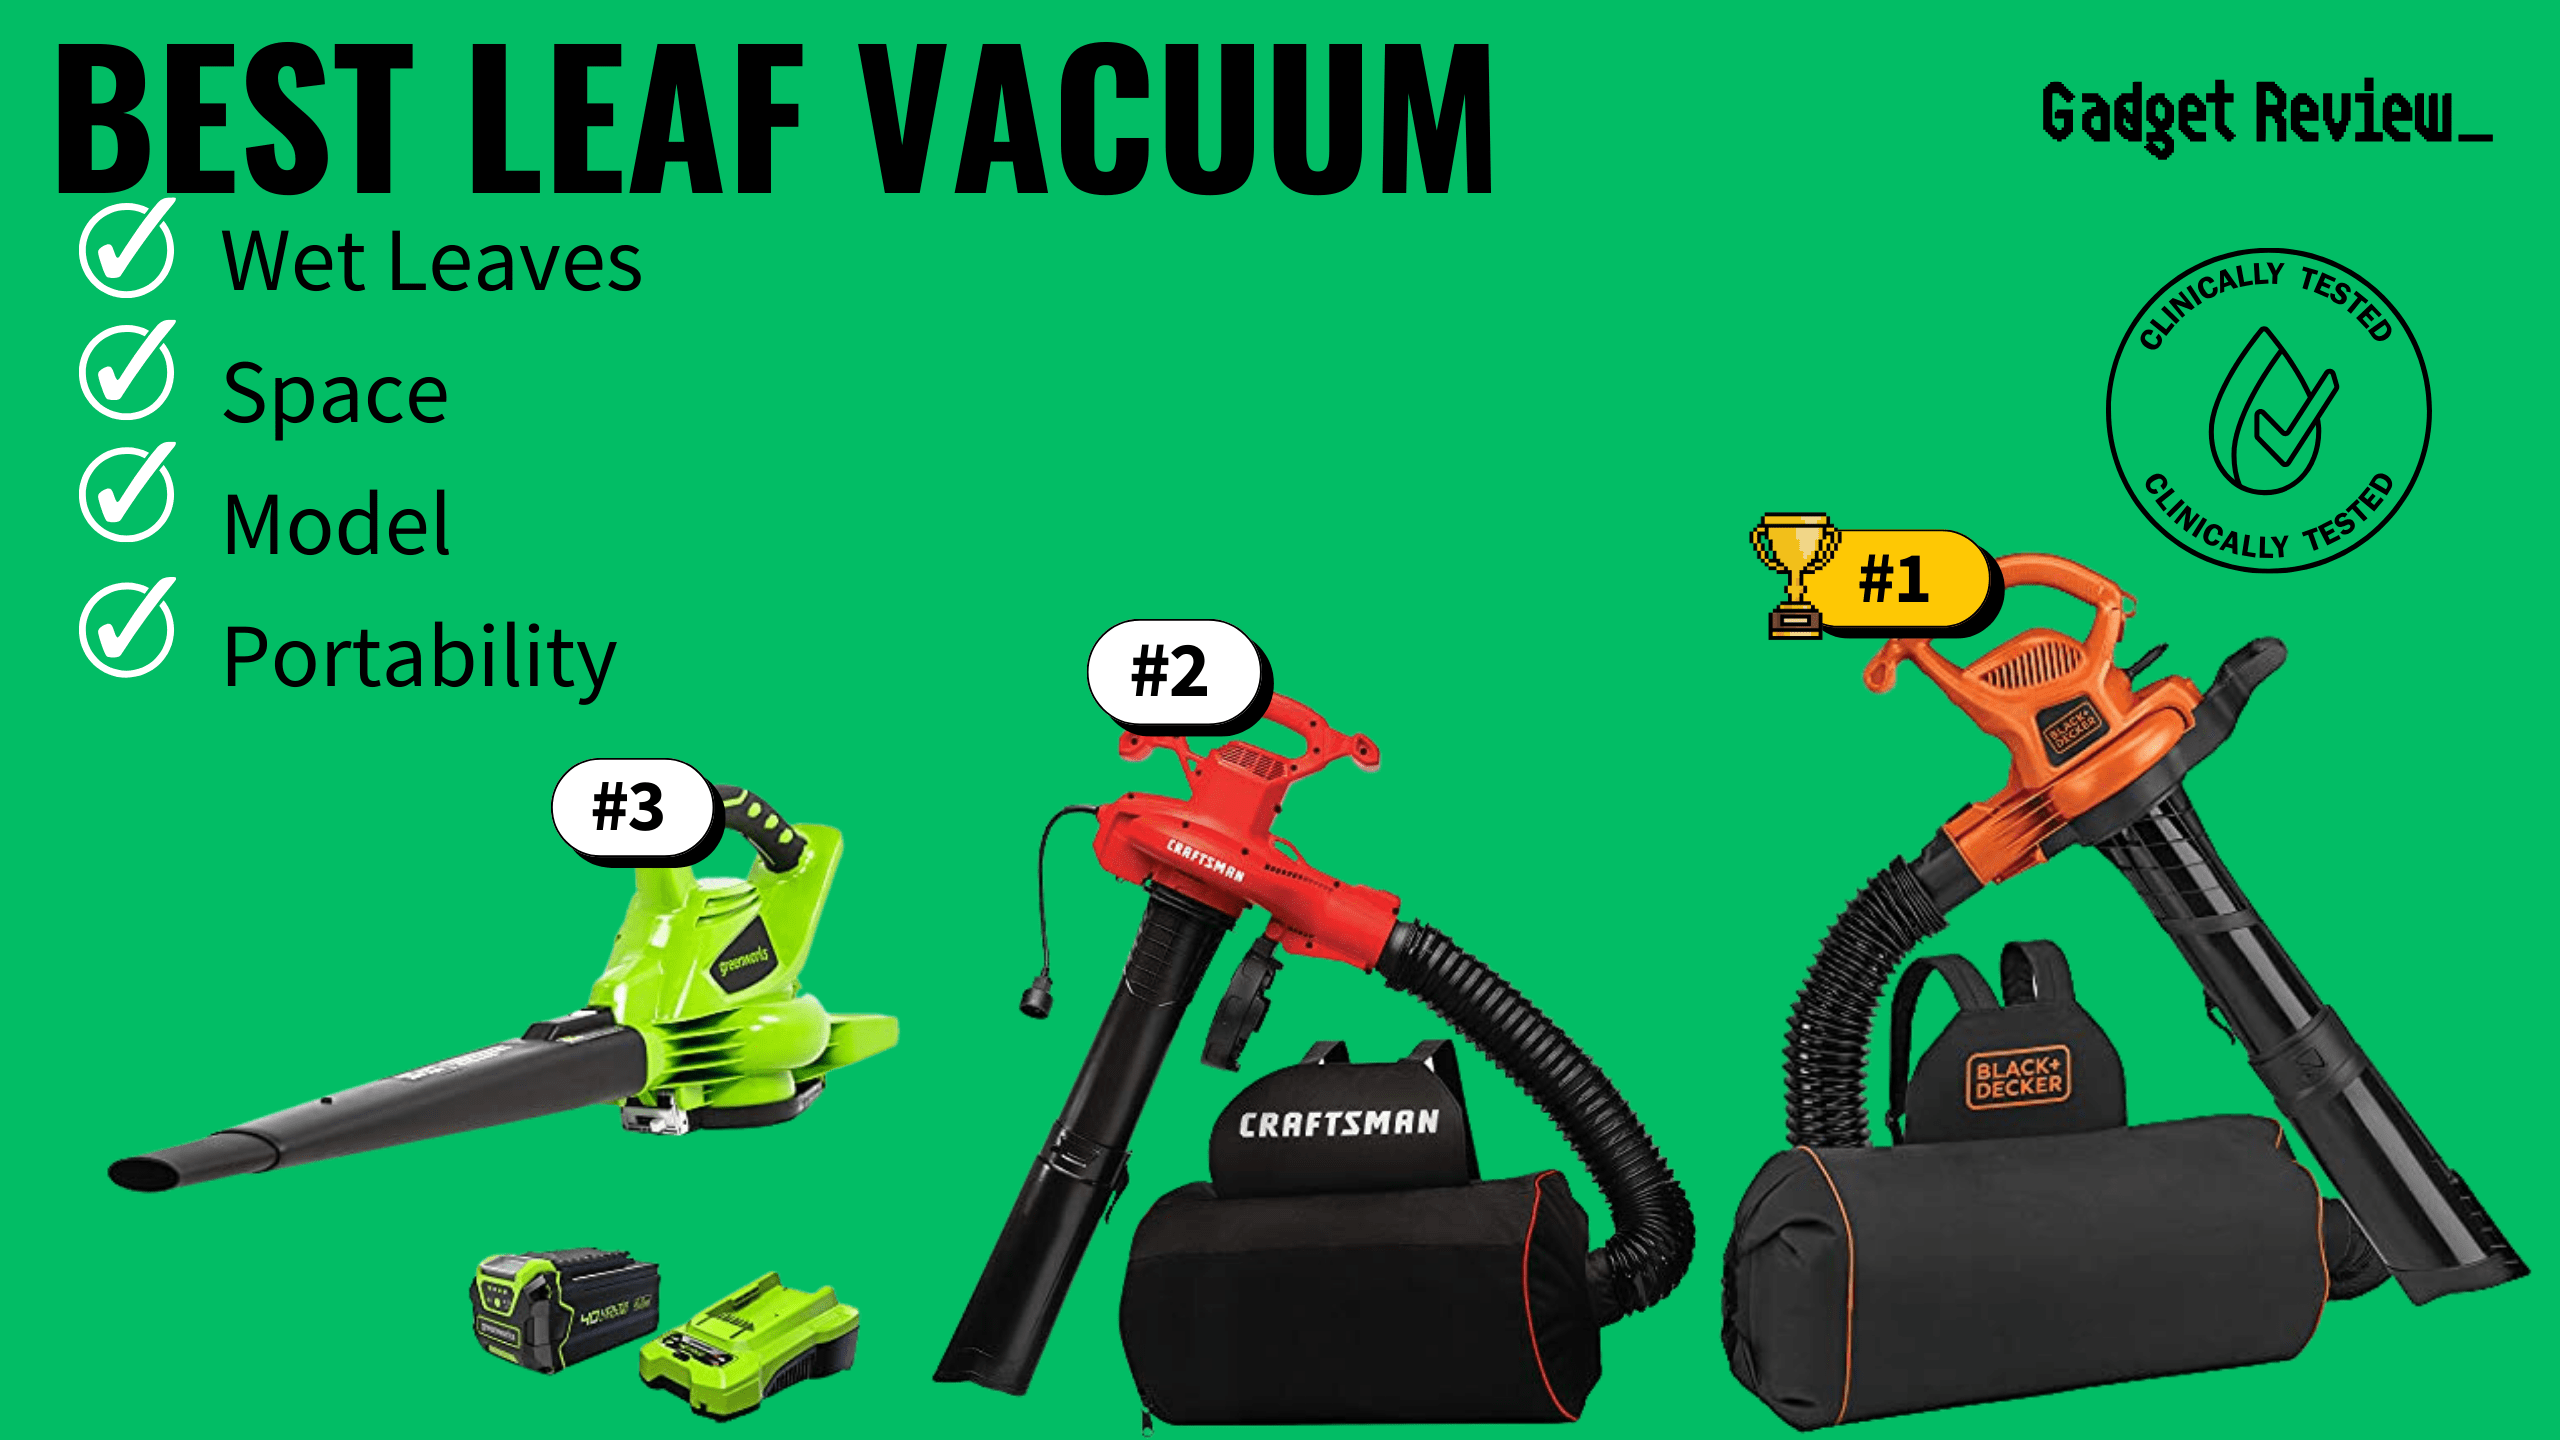 Best Leaf Vacuums